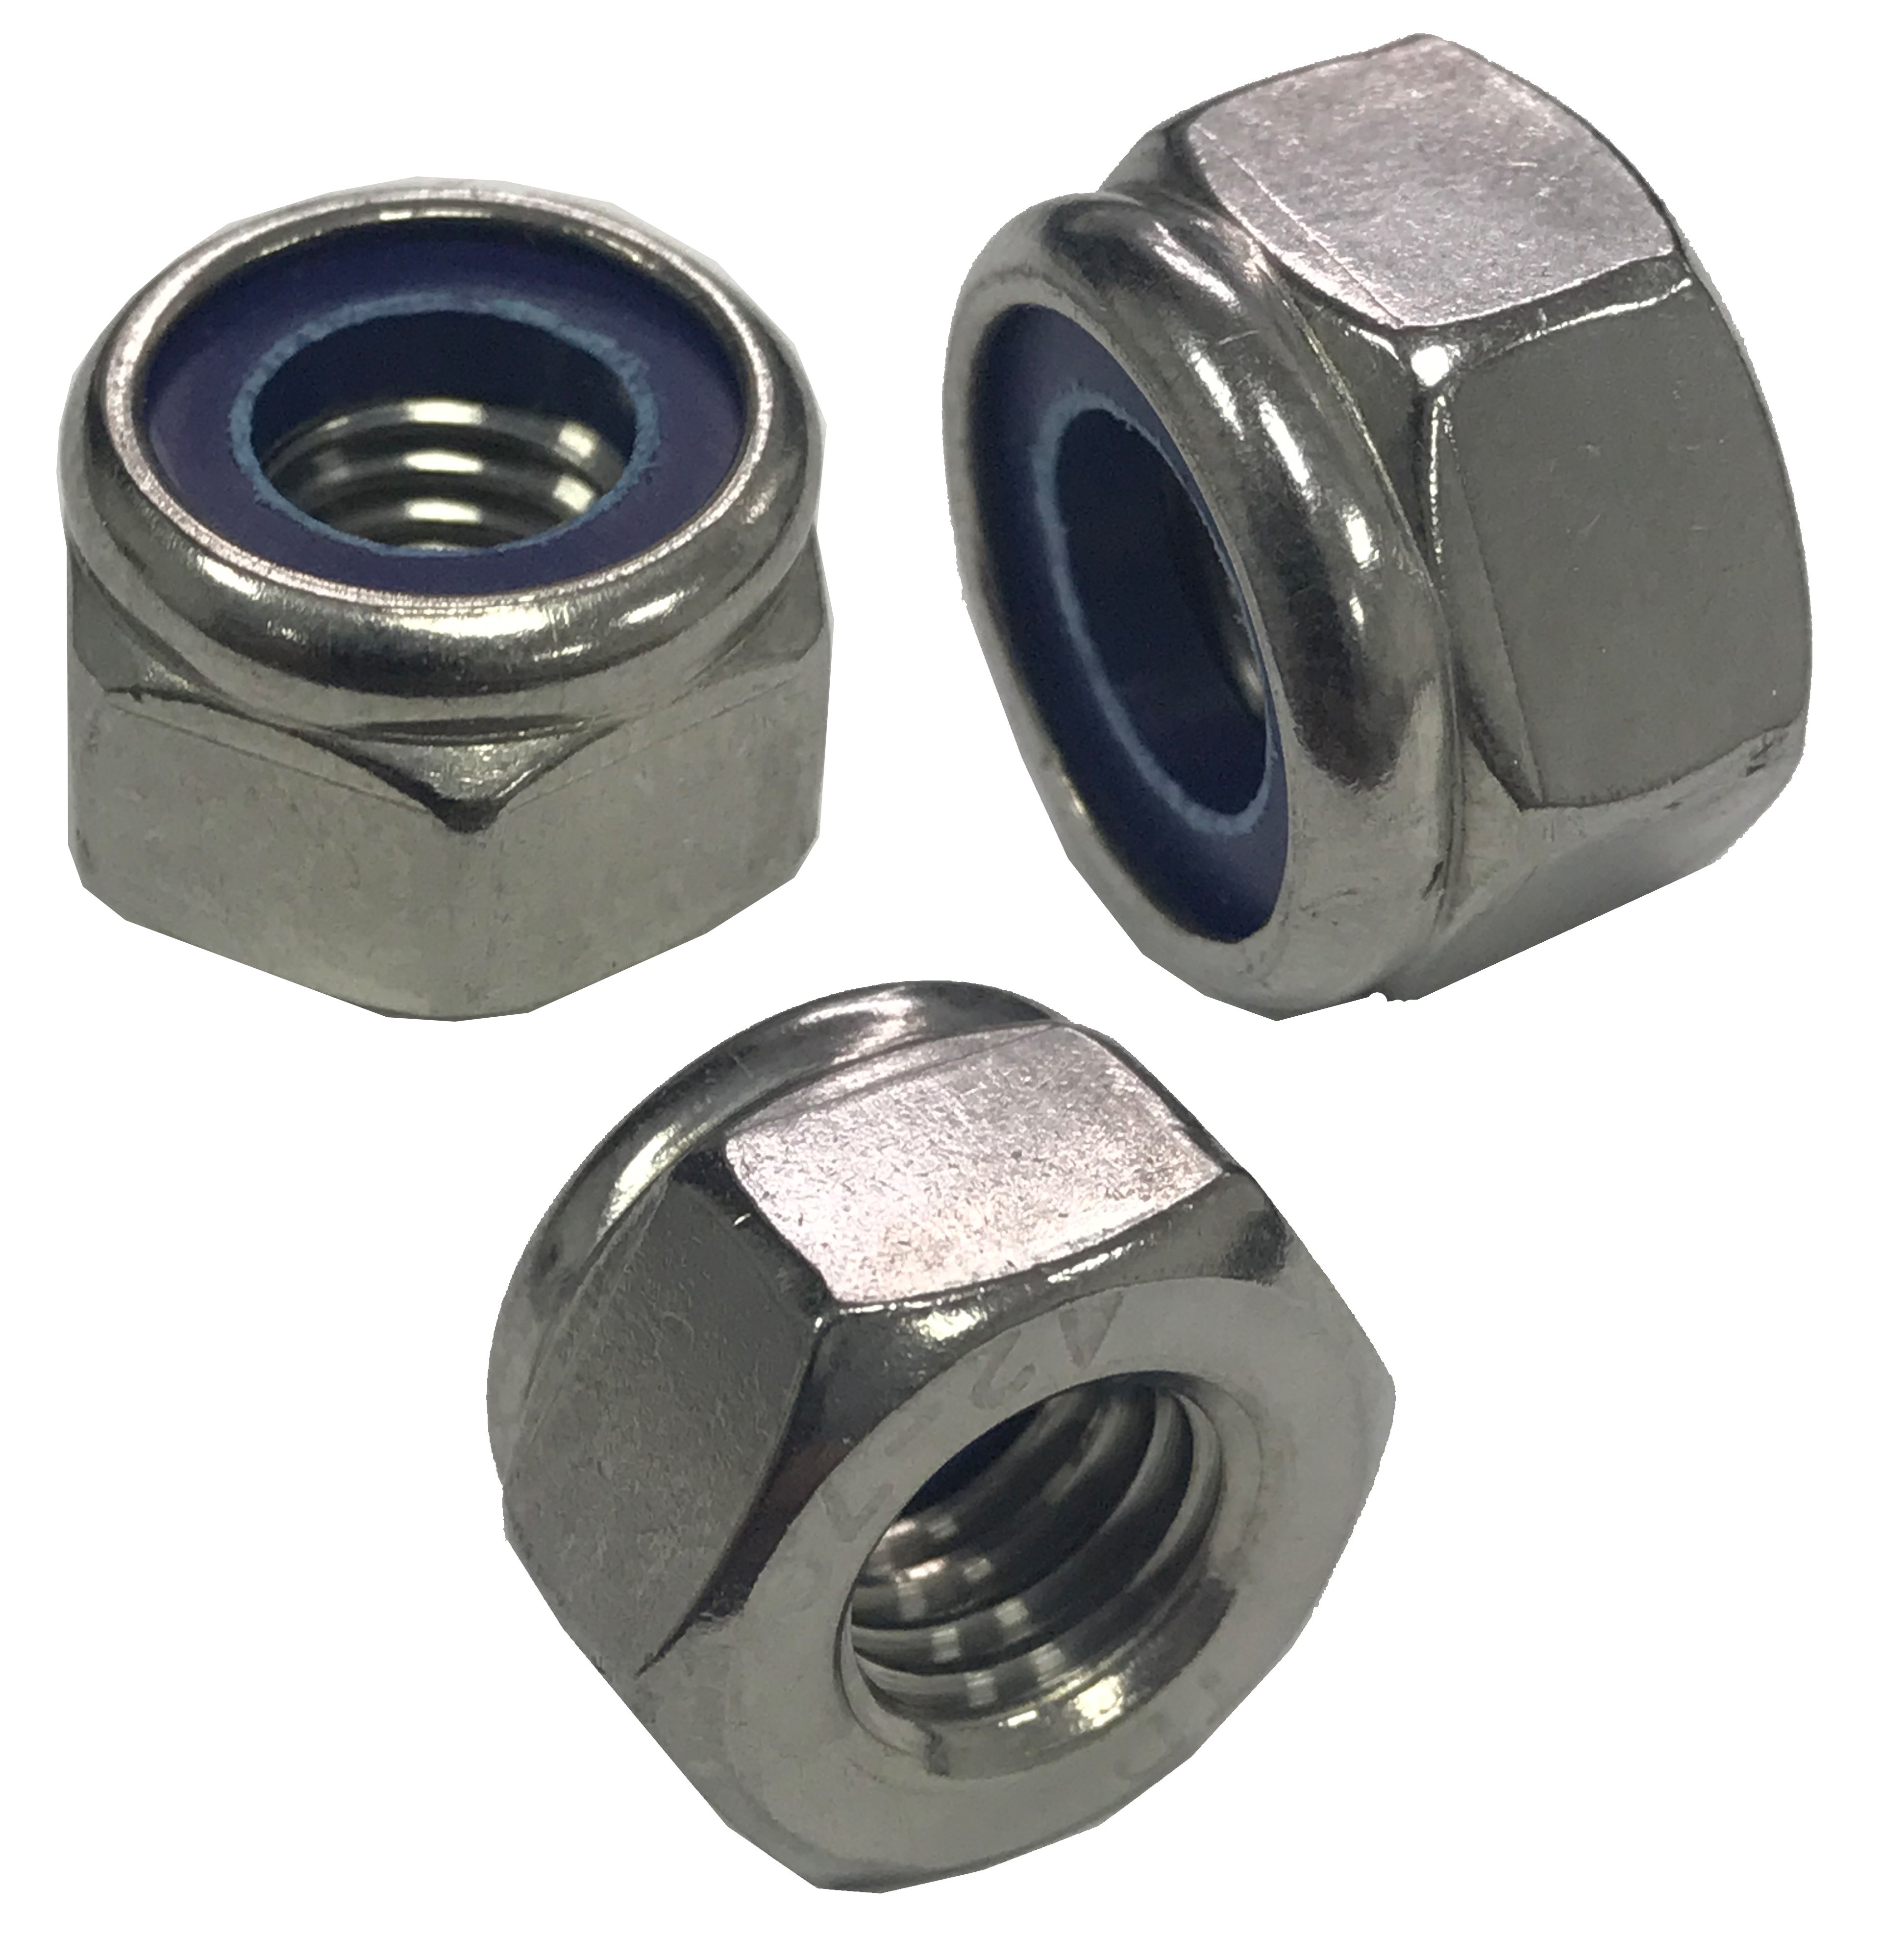 Stop Nut Zinc 5mm nuts  M5 nuts 150 M5-0.8 Coarse Thread Nylon Insert Lock 